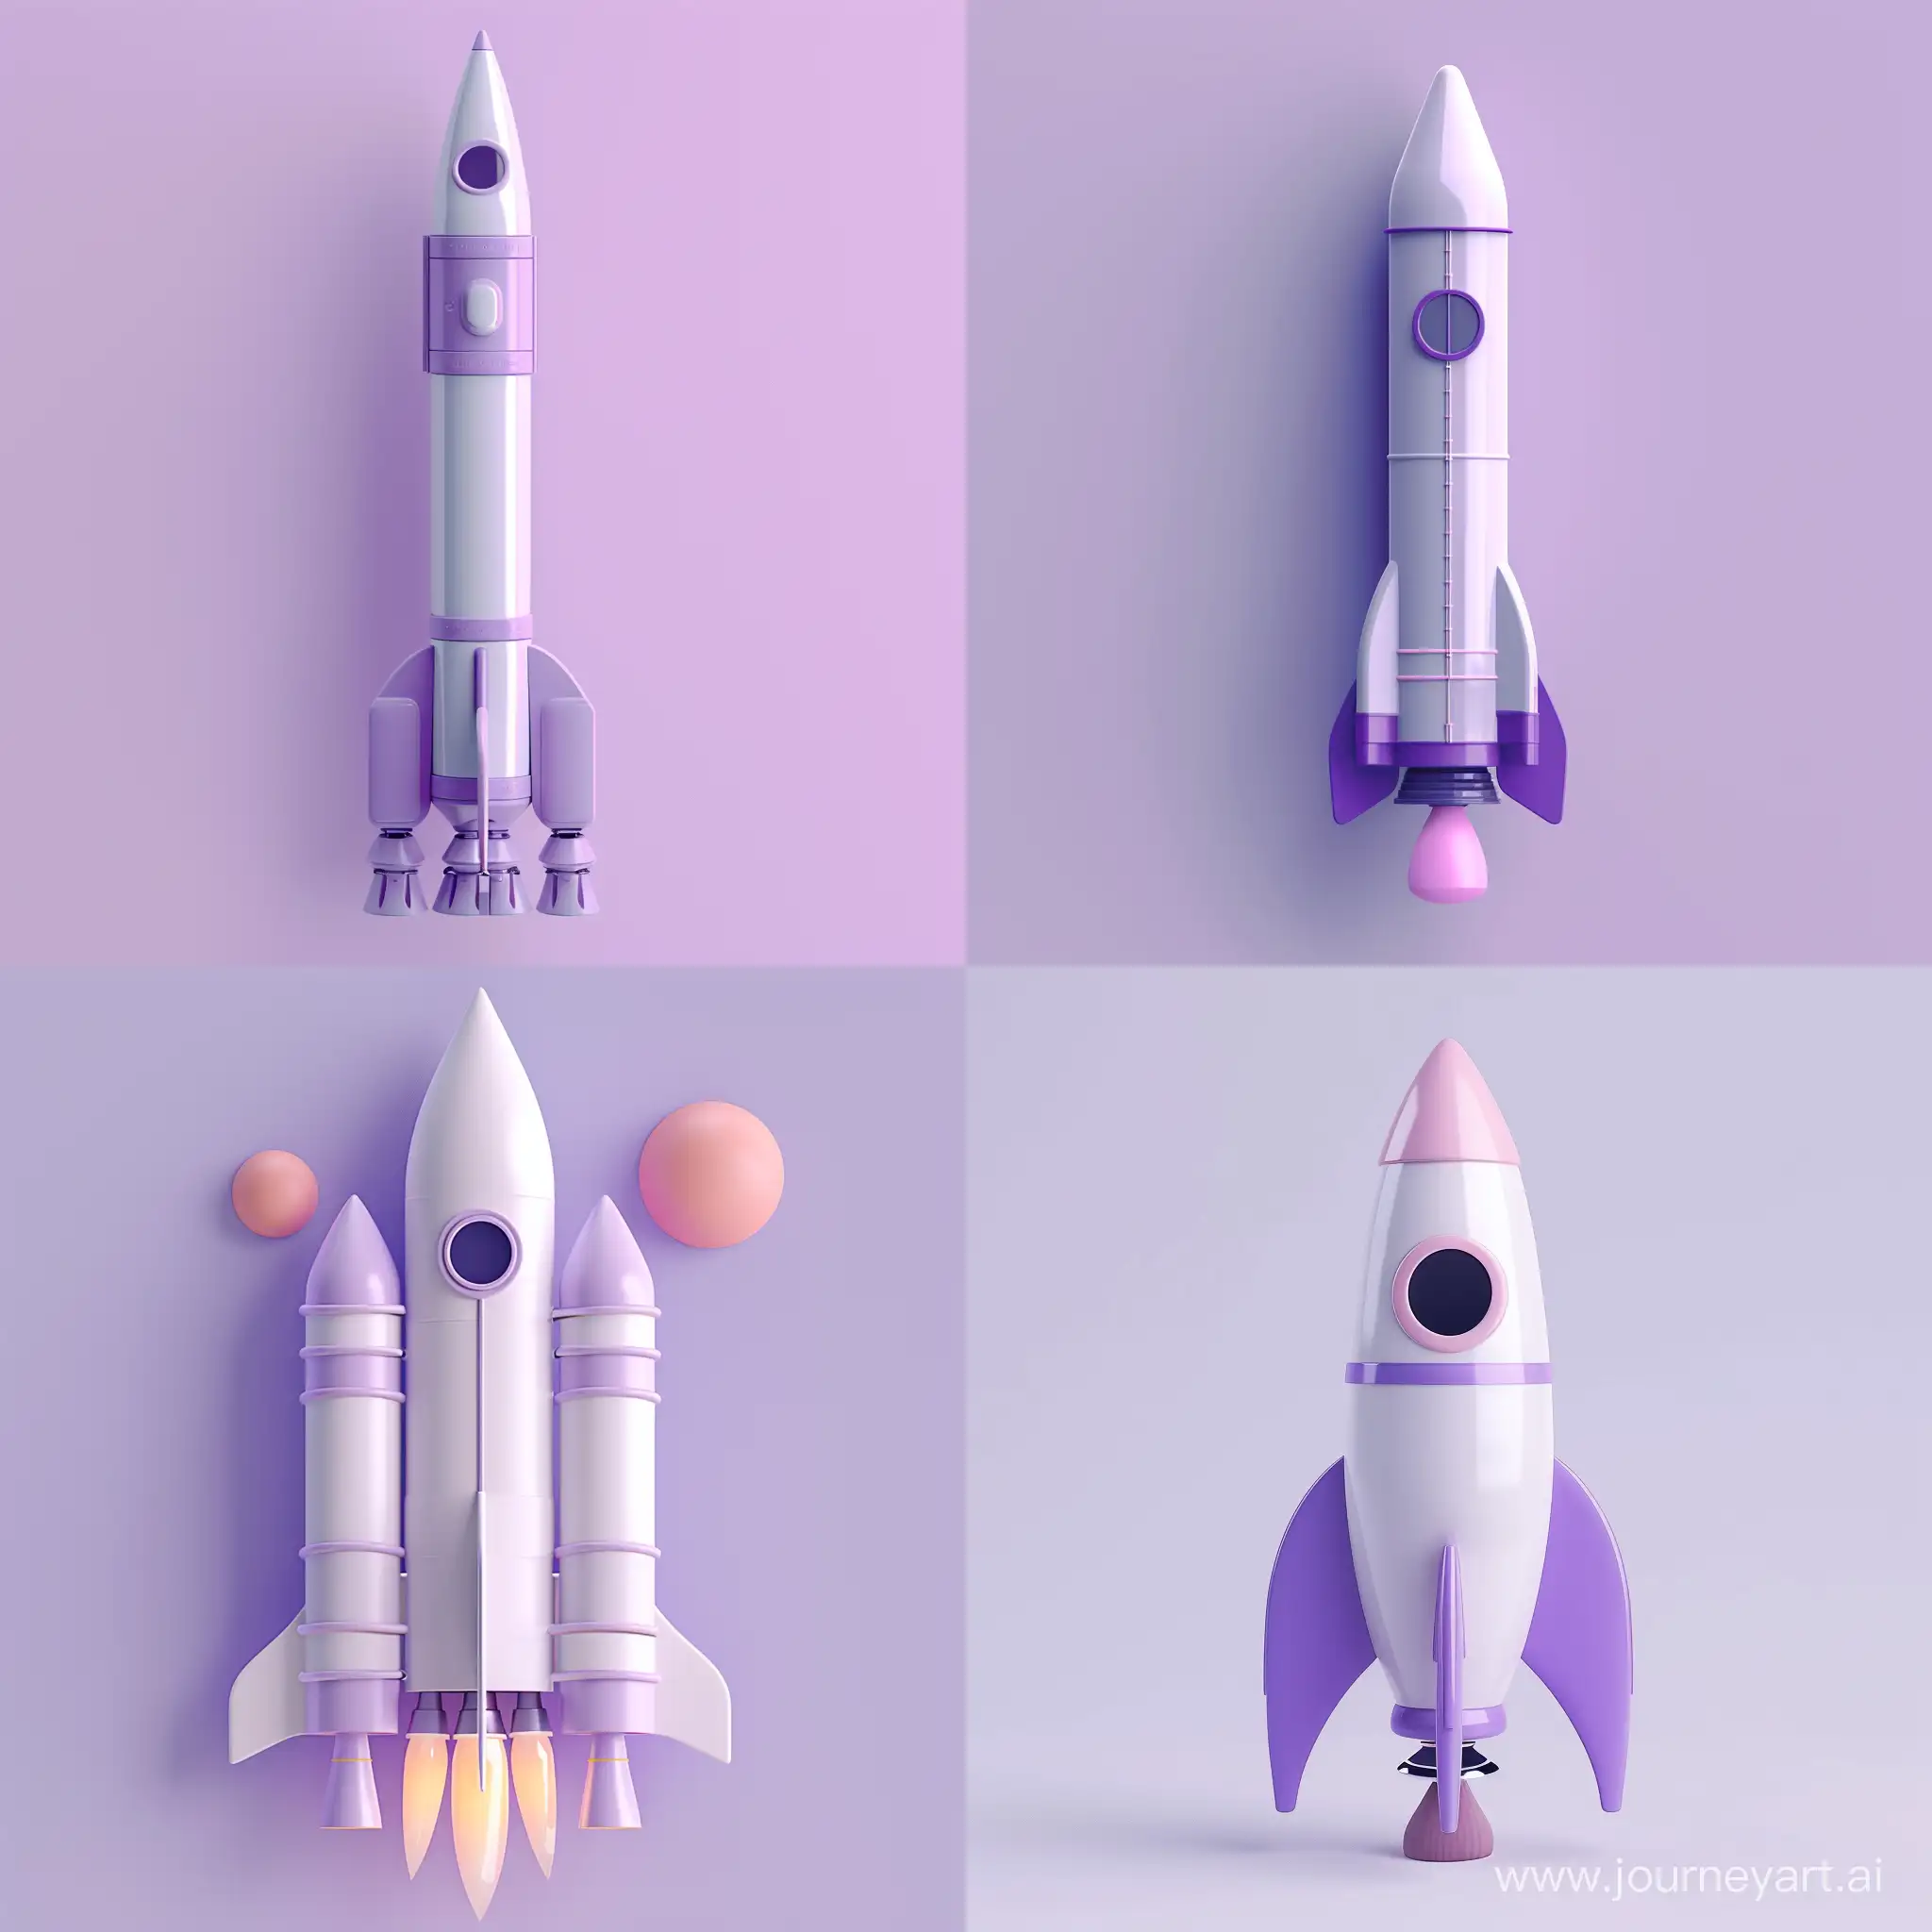 ракета, стройка ракеты, обычное состояние, 3d-иллюстрация,flat-иллюстрация, пастельные тона, фиолетовый, стиль минимализм, цифровая иллюстрация, высокое качество, высокая детализация, без фона